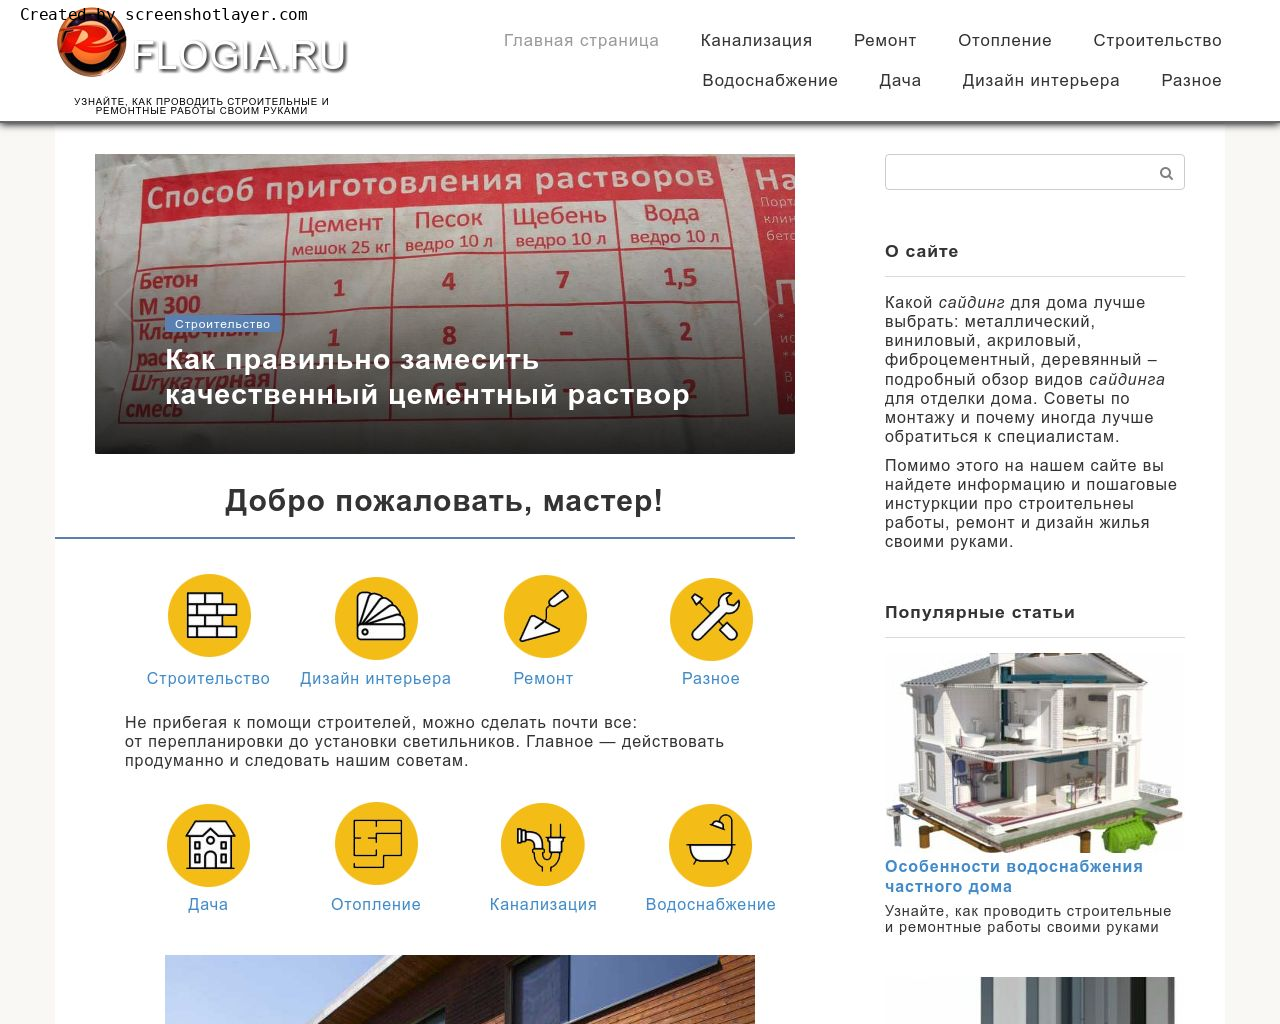 Изображение сайта flogia.ru в разрешении 1280x1024